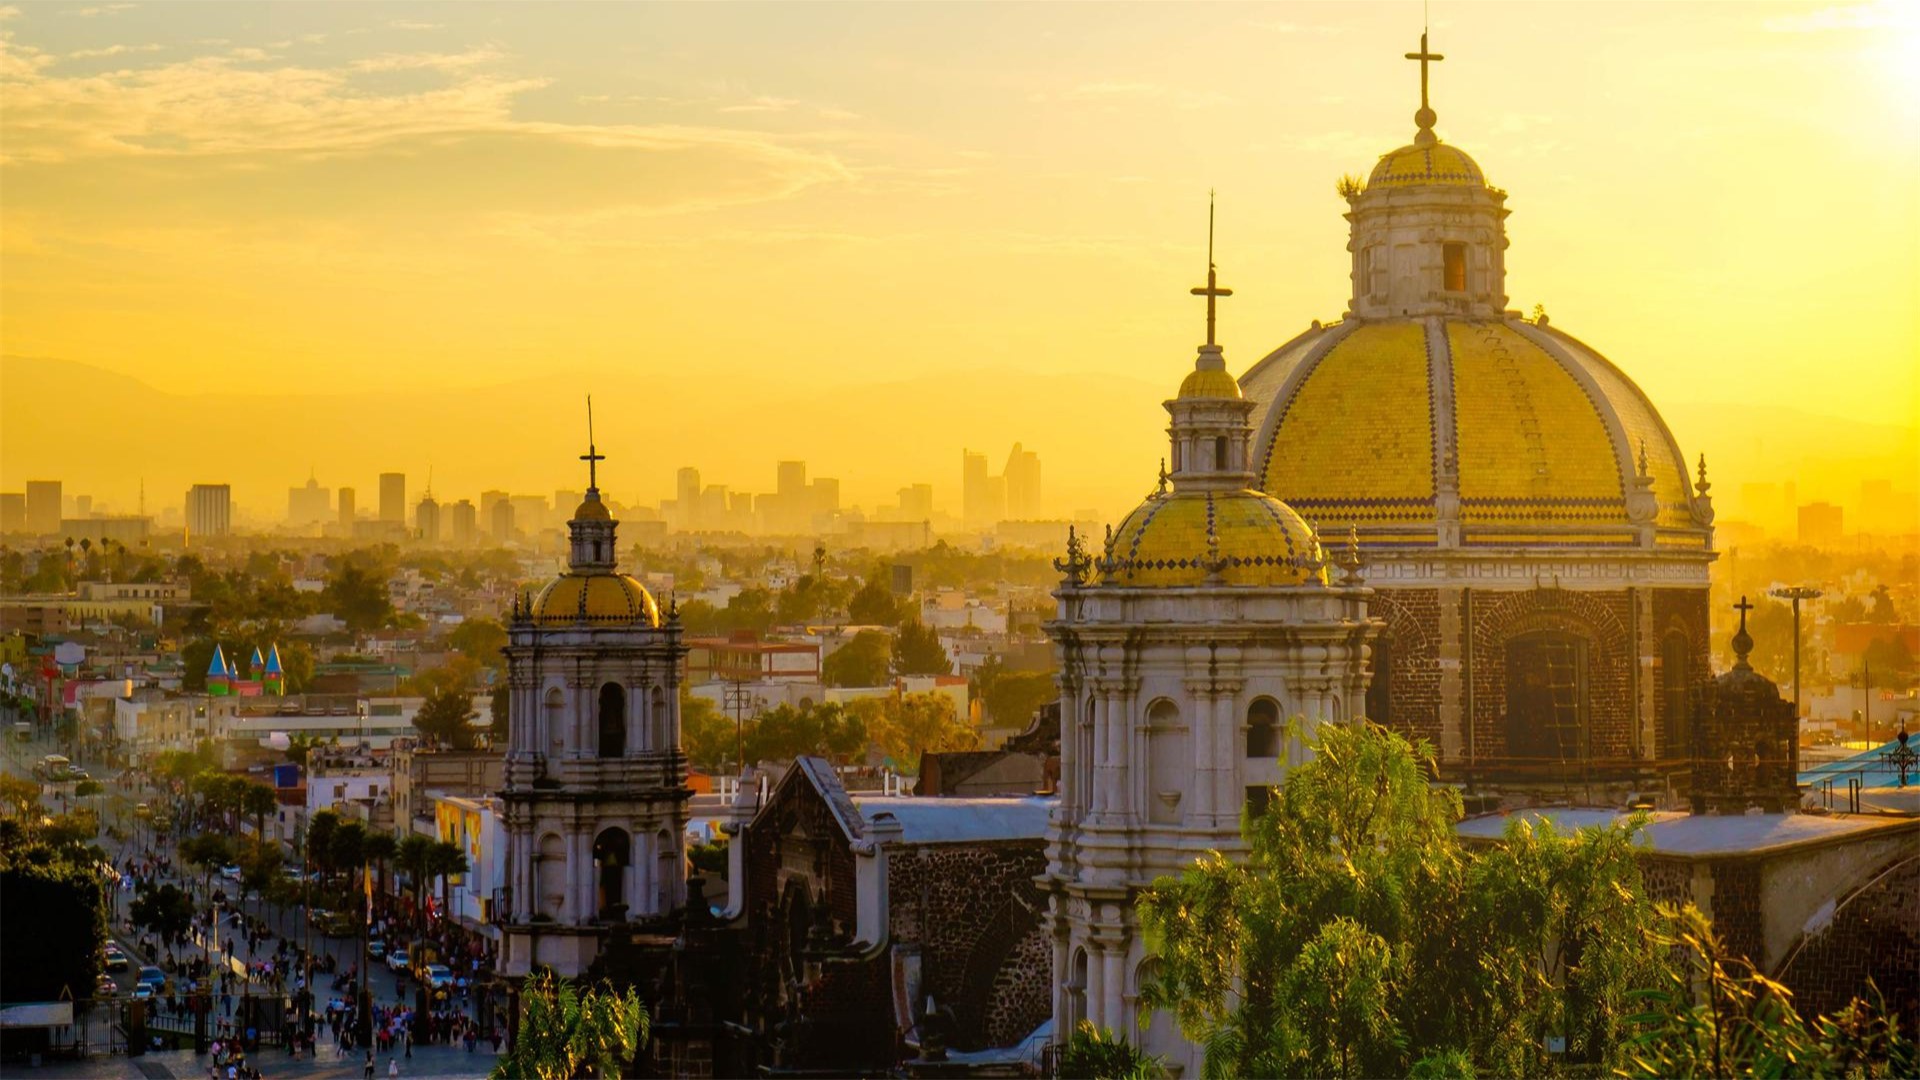 Immobilier News Tecnocasa, Ciudad de México: El mercado cambiante y el crecimiento empresarial